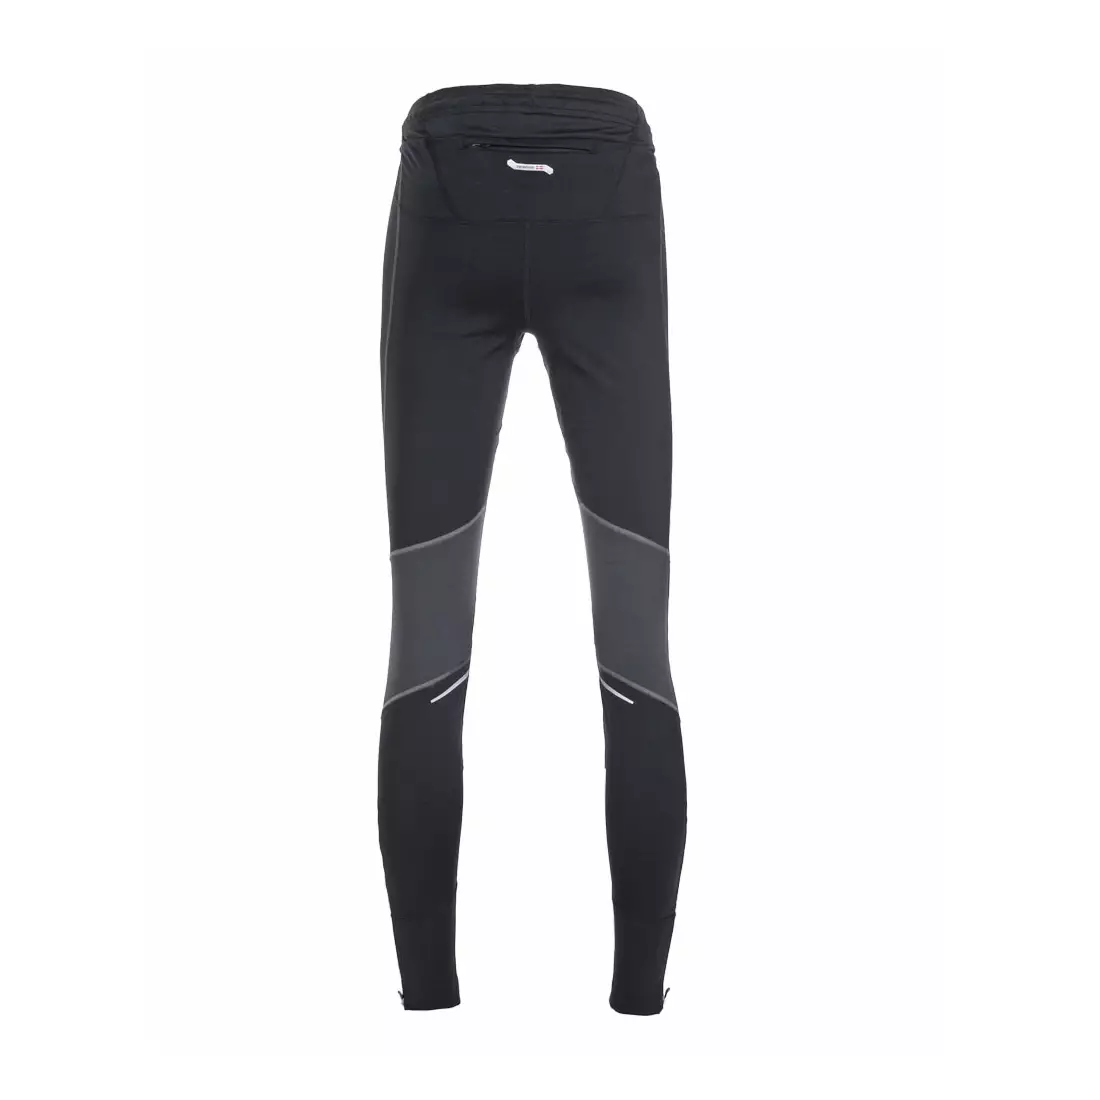 NEWLINE ICONIC PROTECT TIGHTS 10132-060 - dámské zateplené běžecké kalhoty, barva: Černá